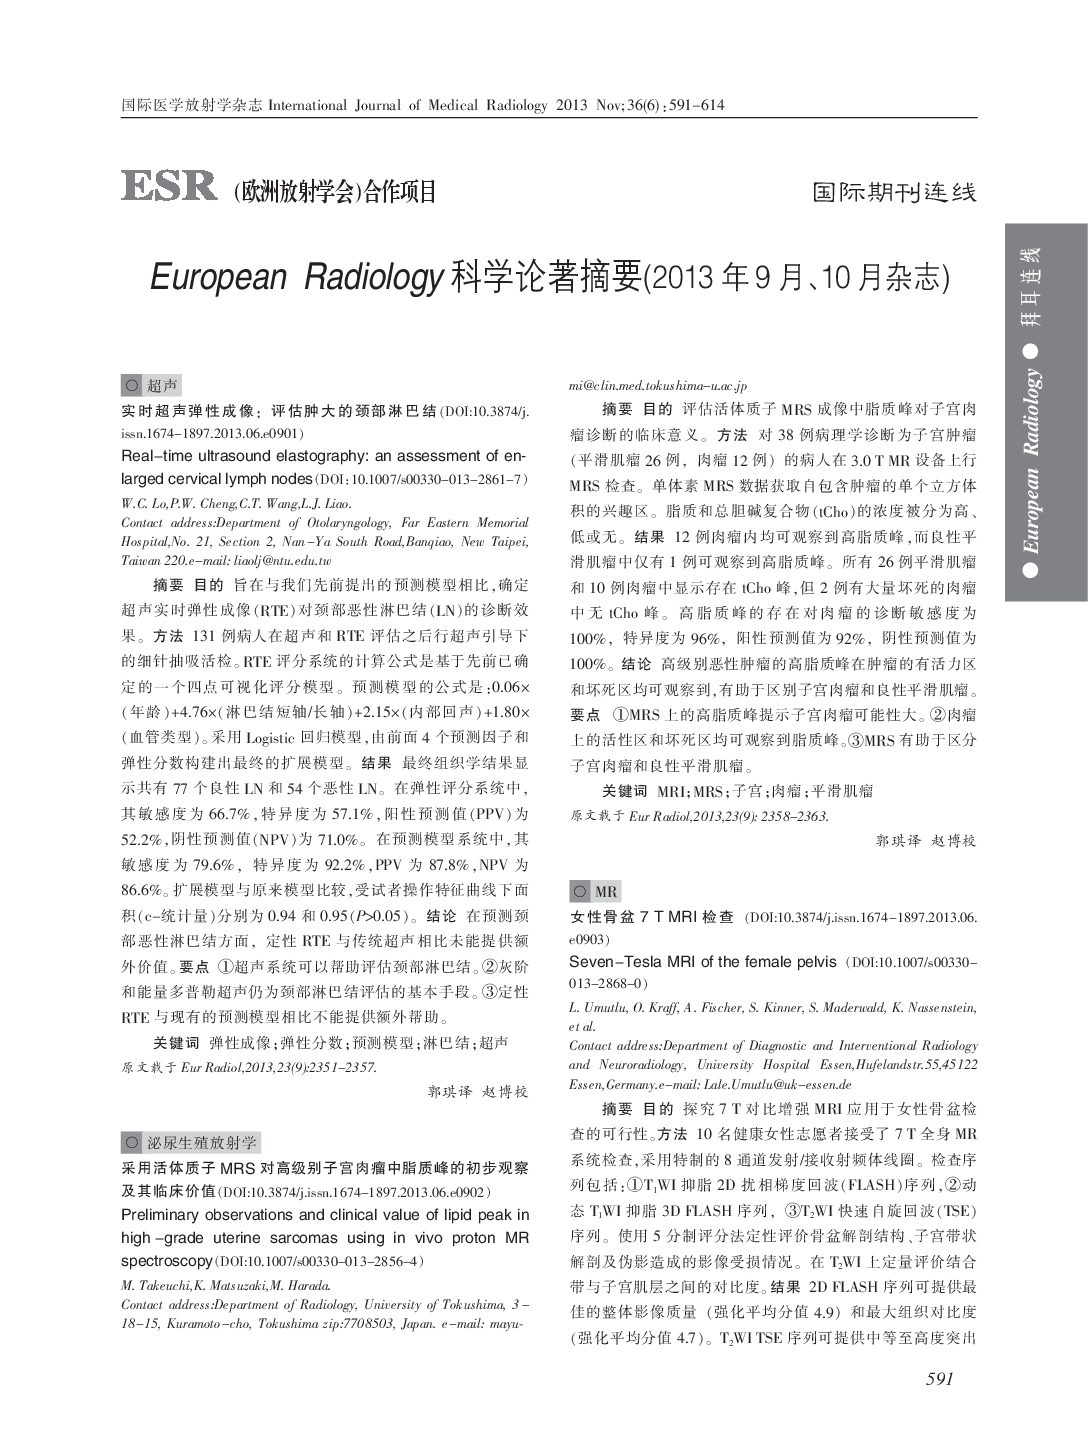 European Radiology Vol. 2013, September-October (1,83 MB)